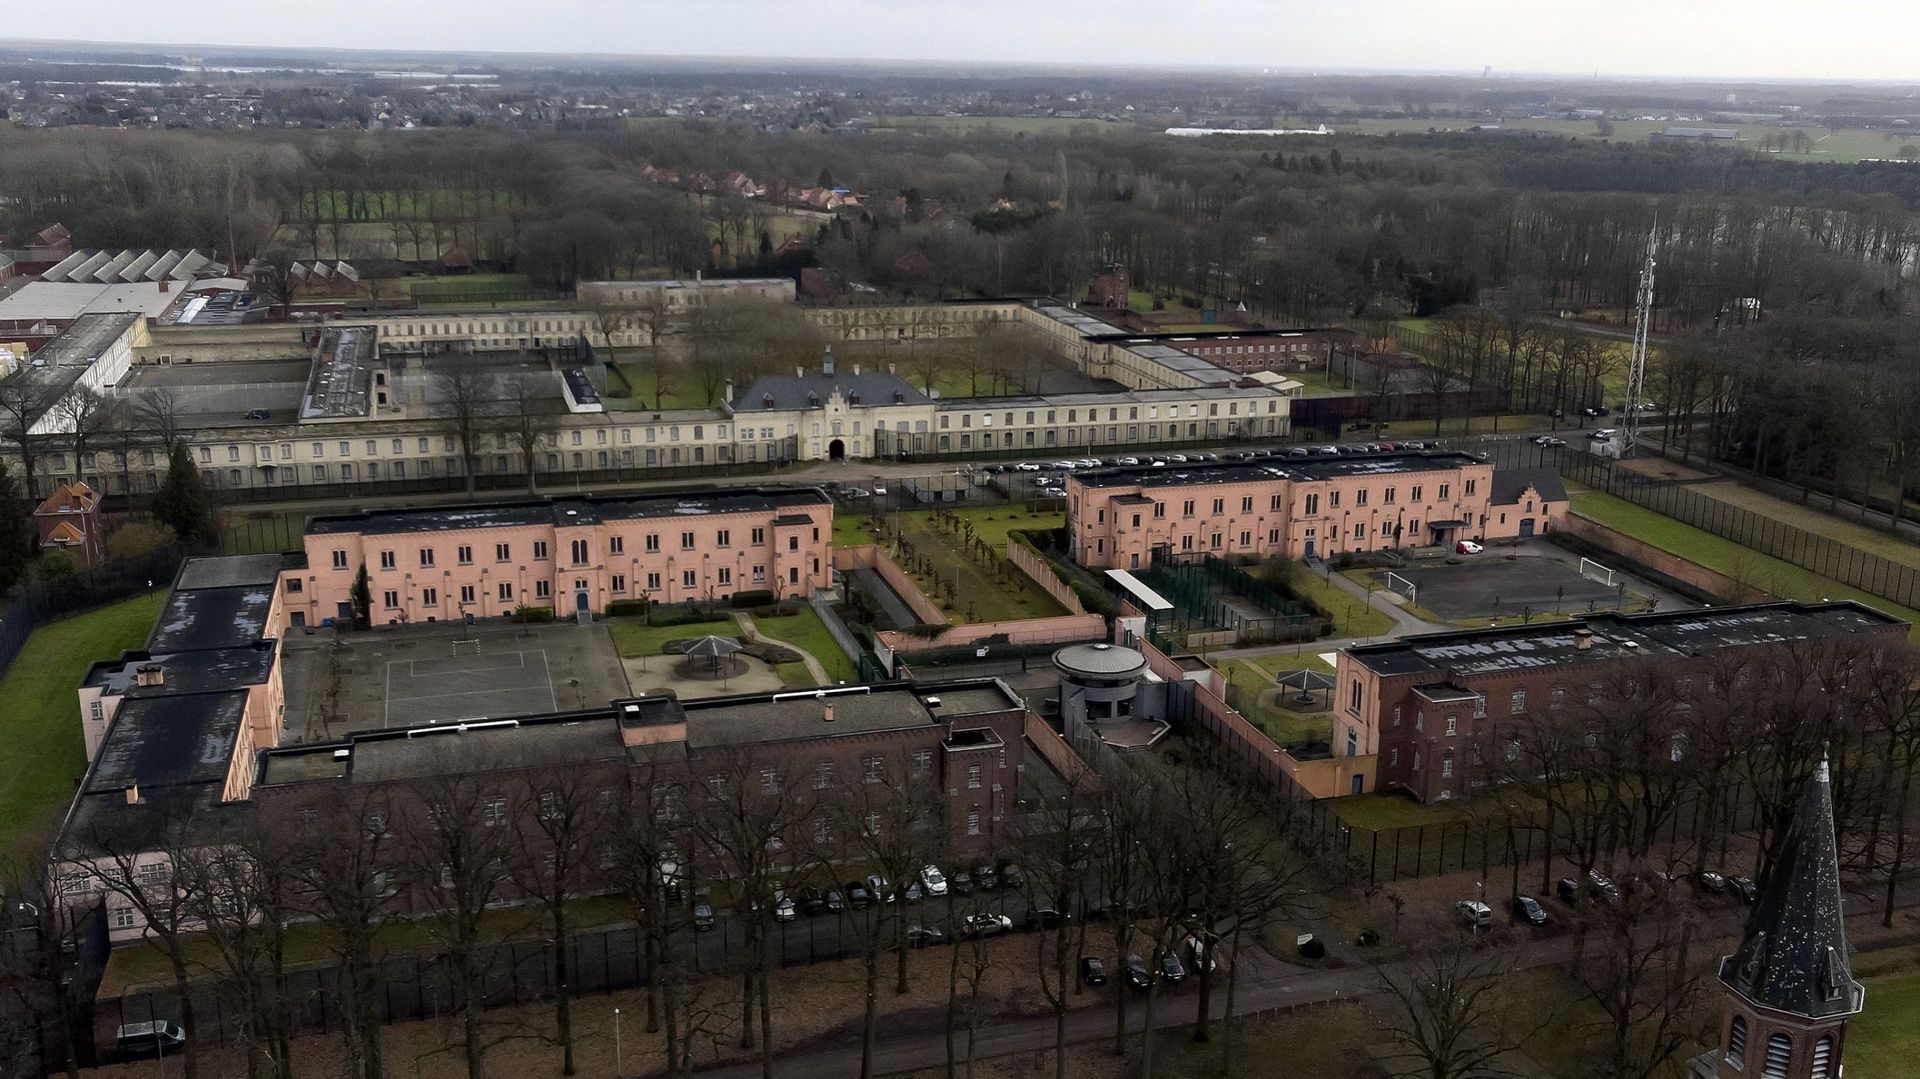 Vue aérienne de la prison de Merksplas